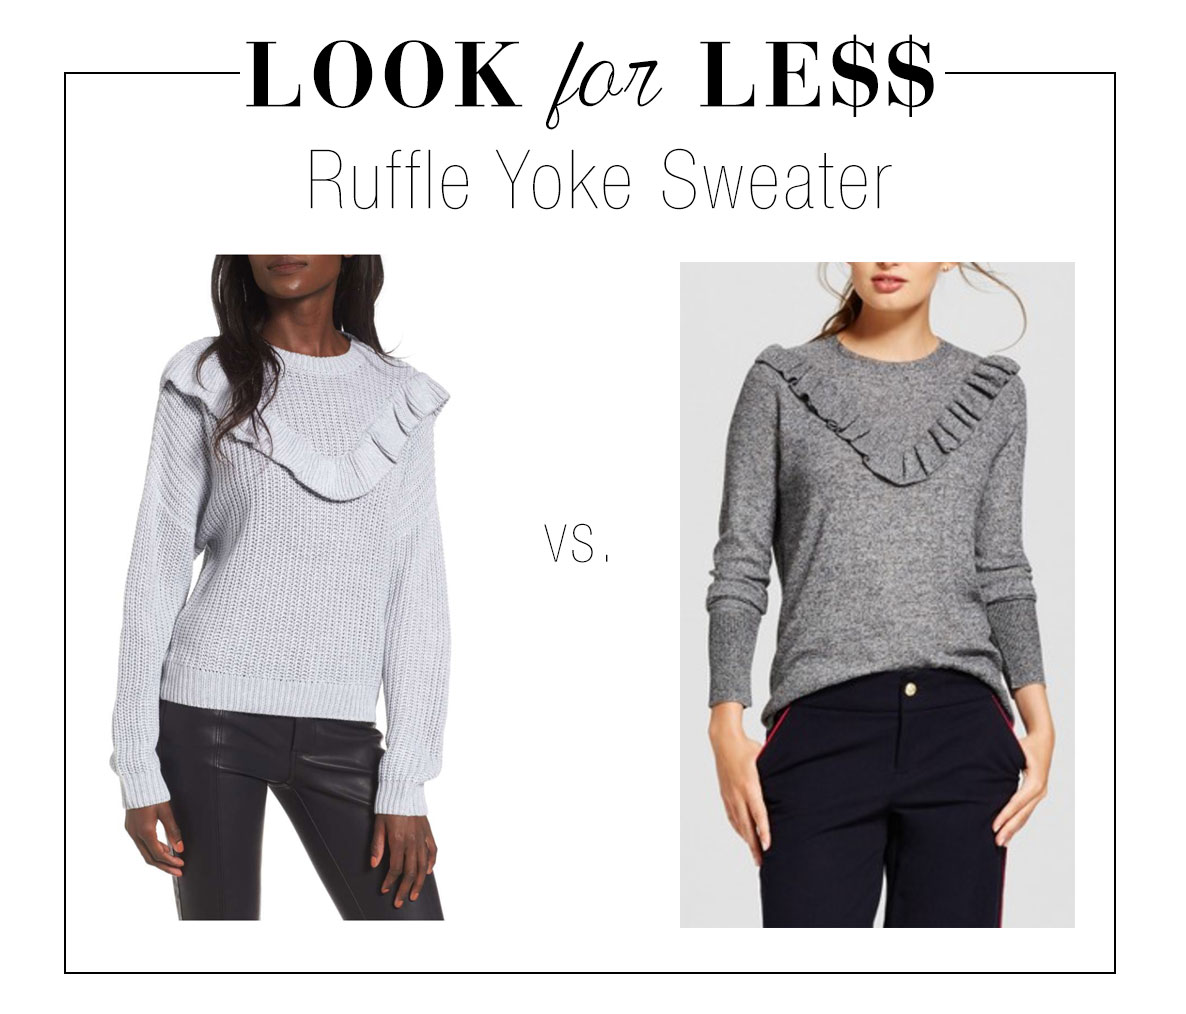 Ruffle yoke sweater look for less